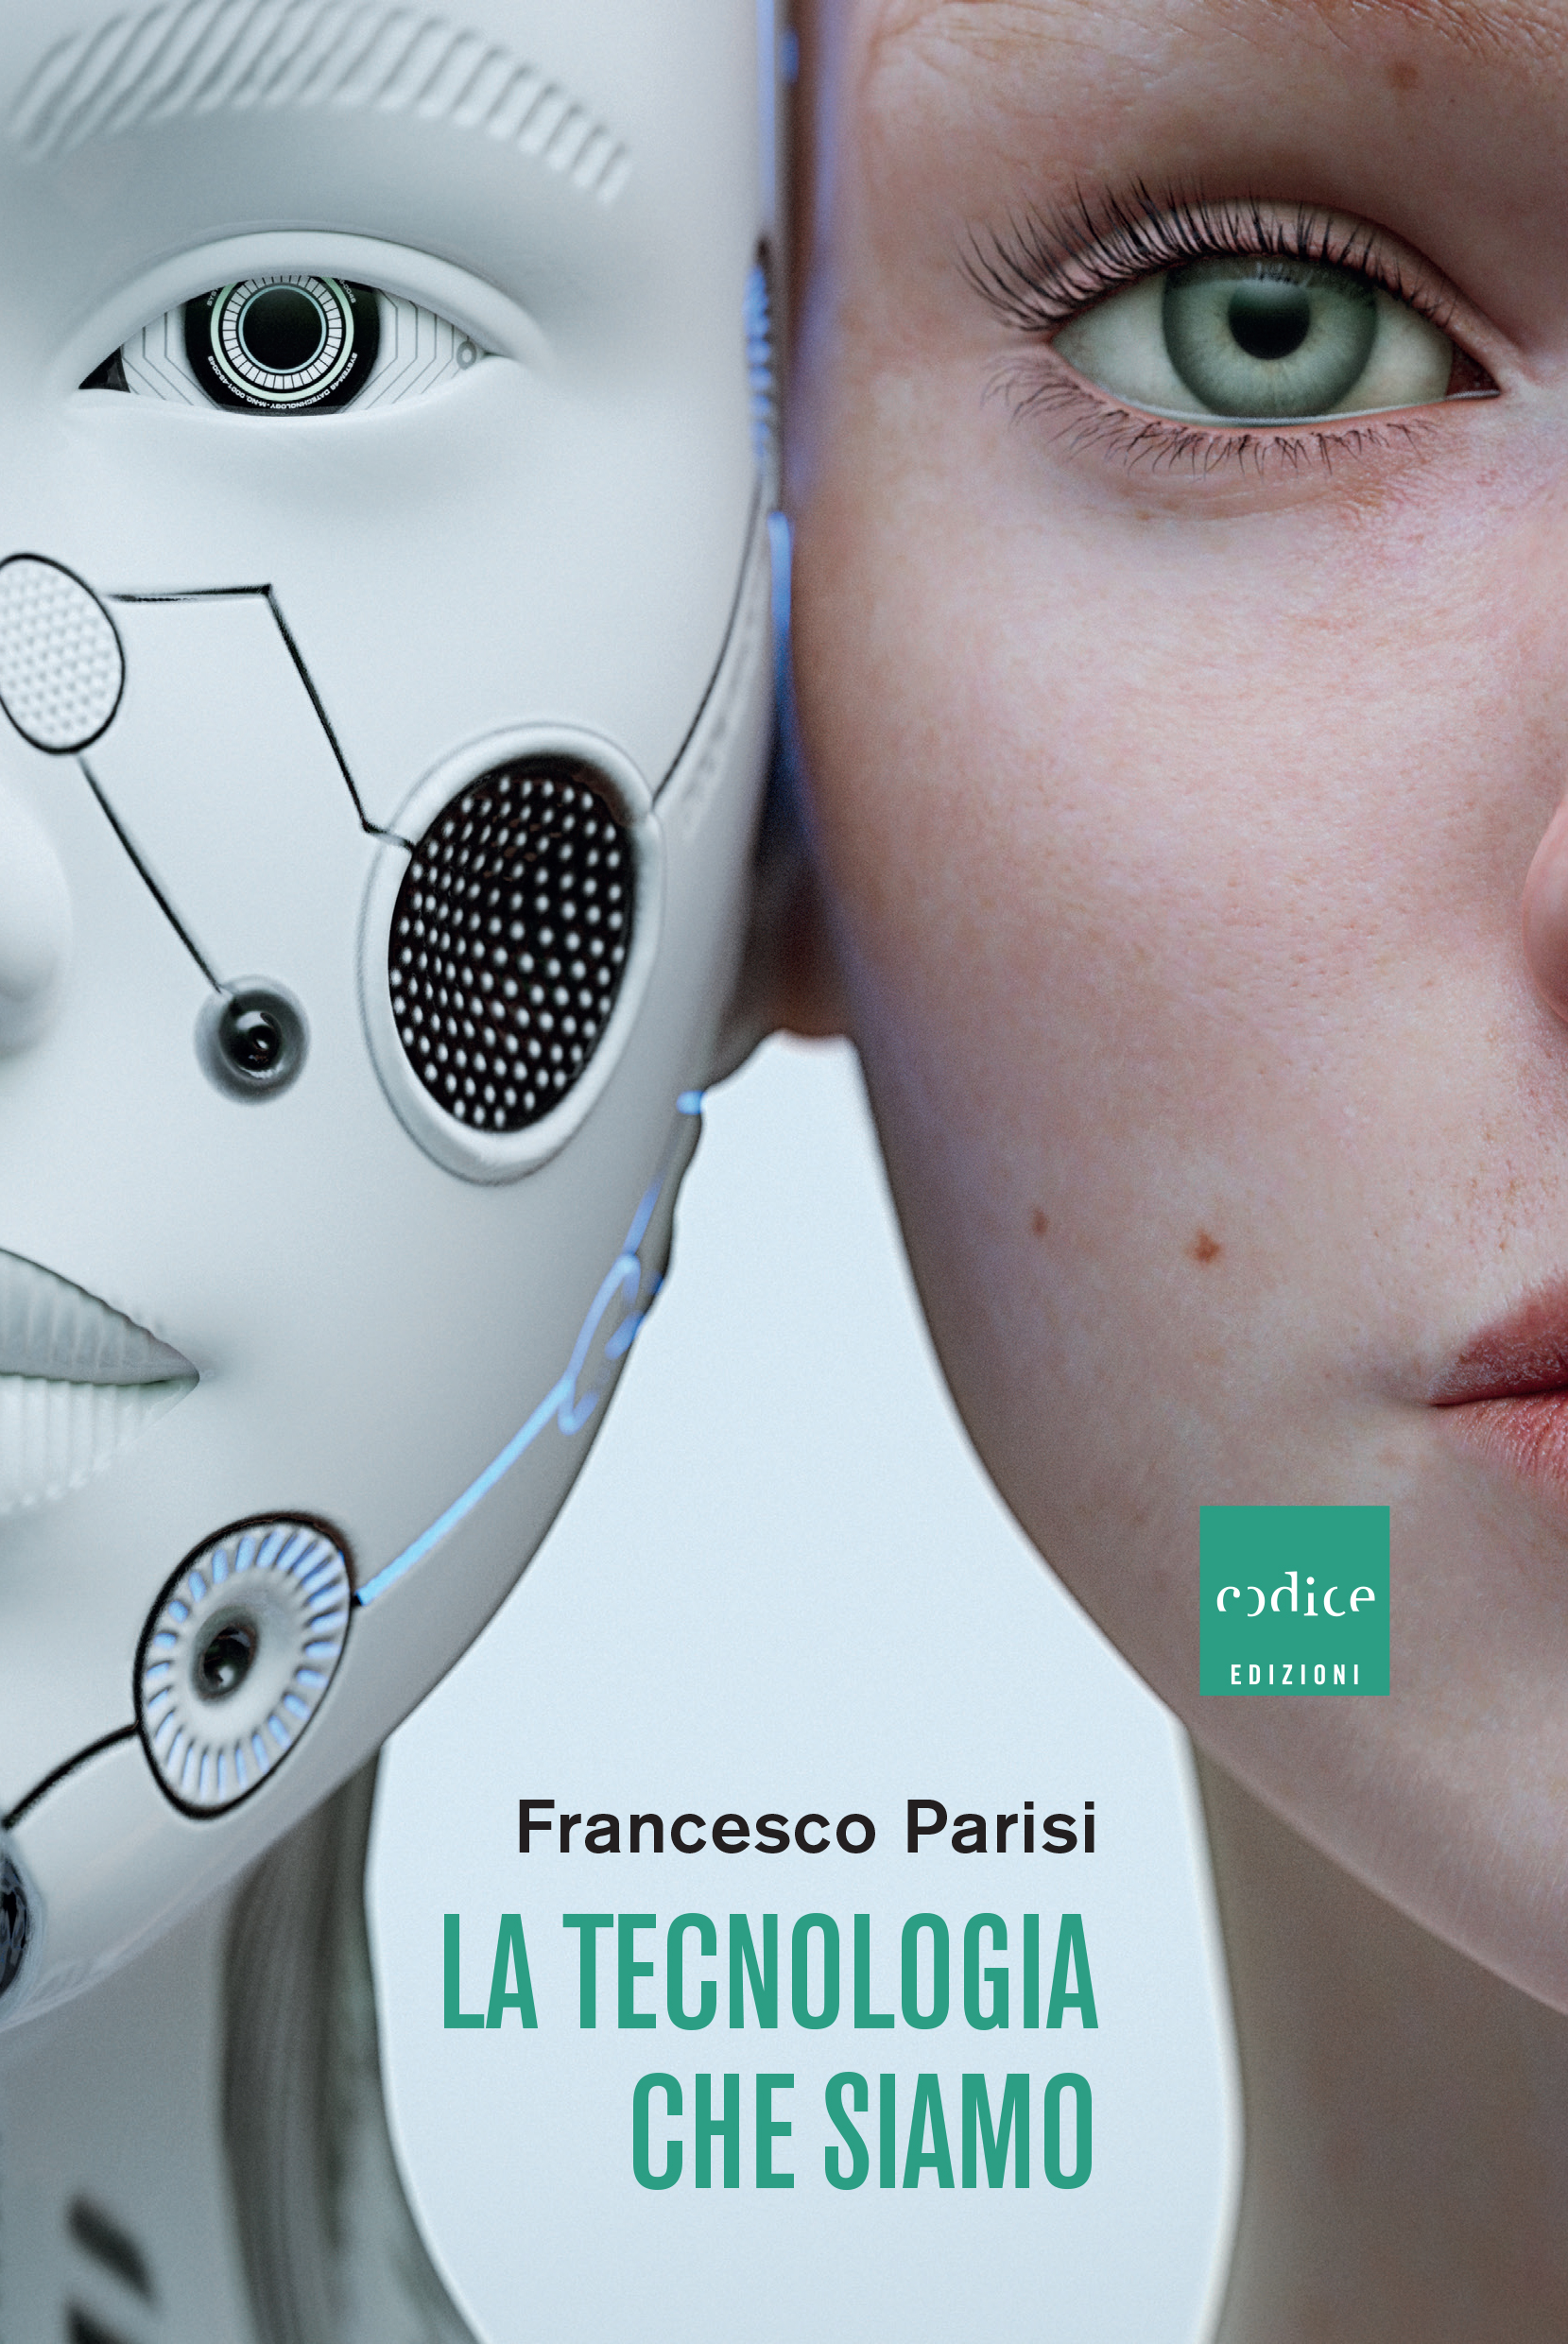 "La tecnologia che siamo", Francesco Parisi